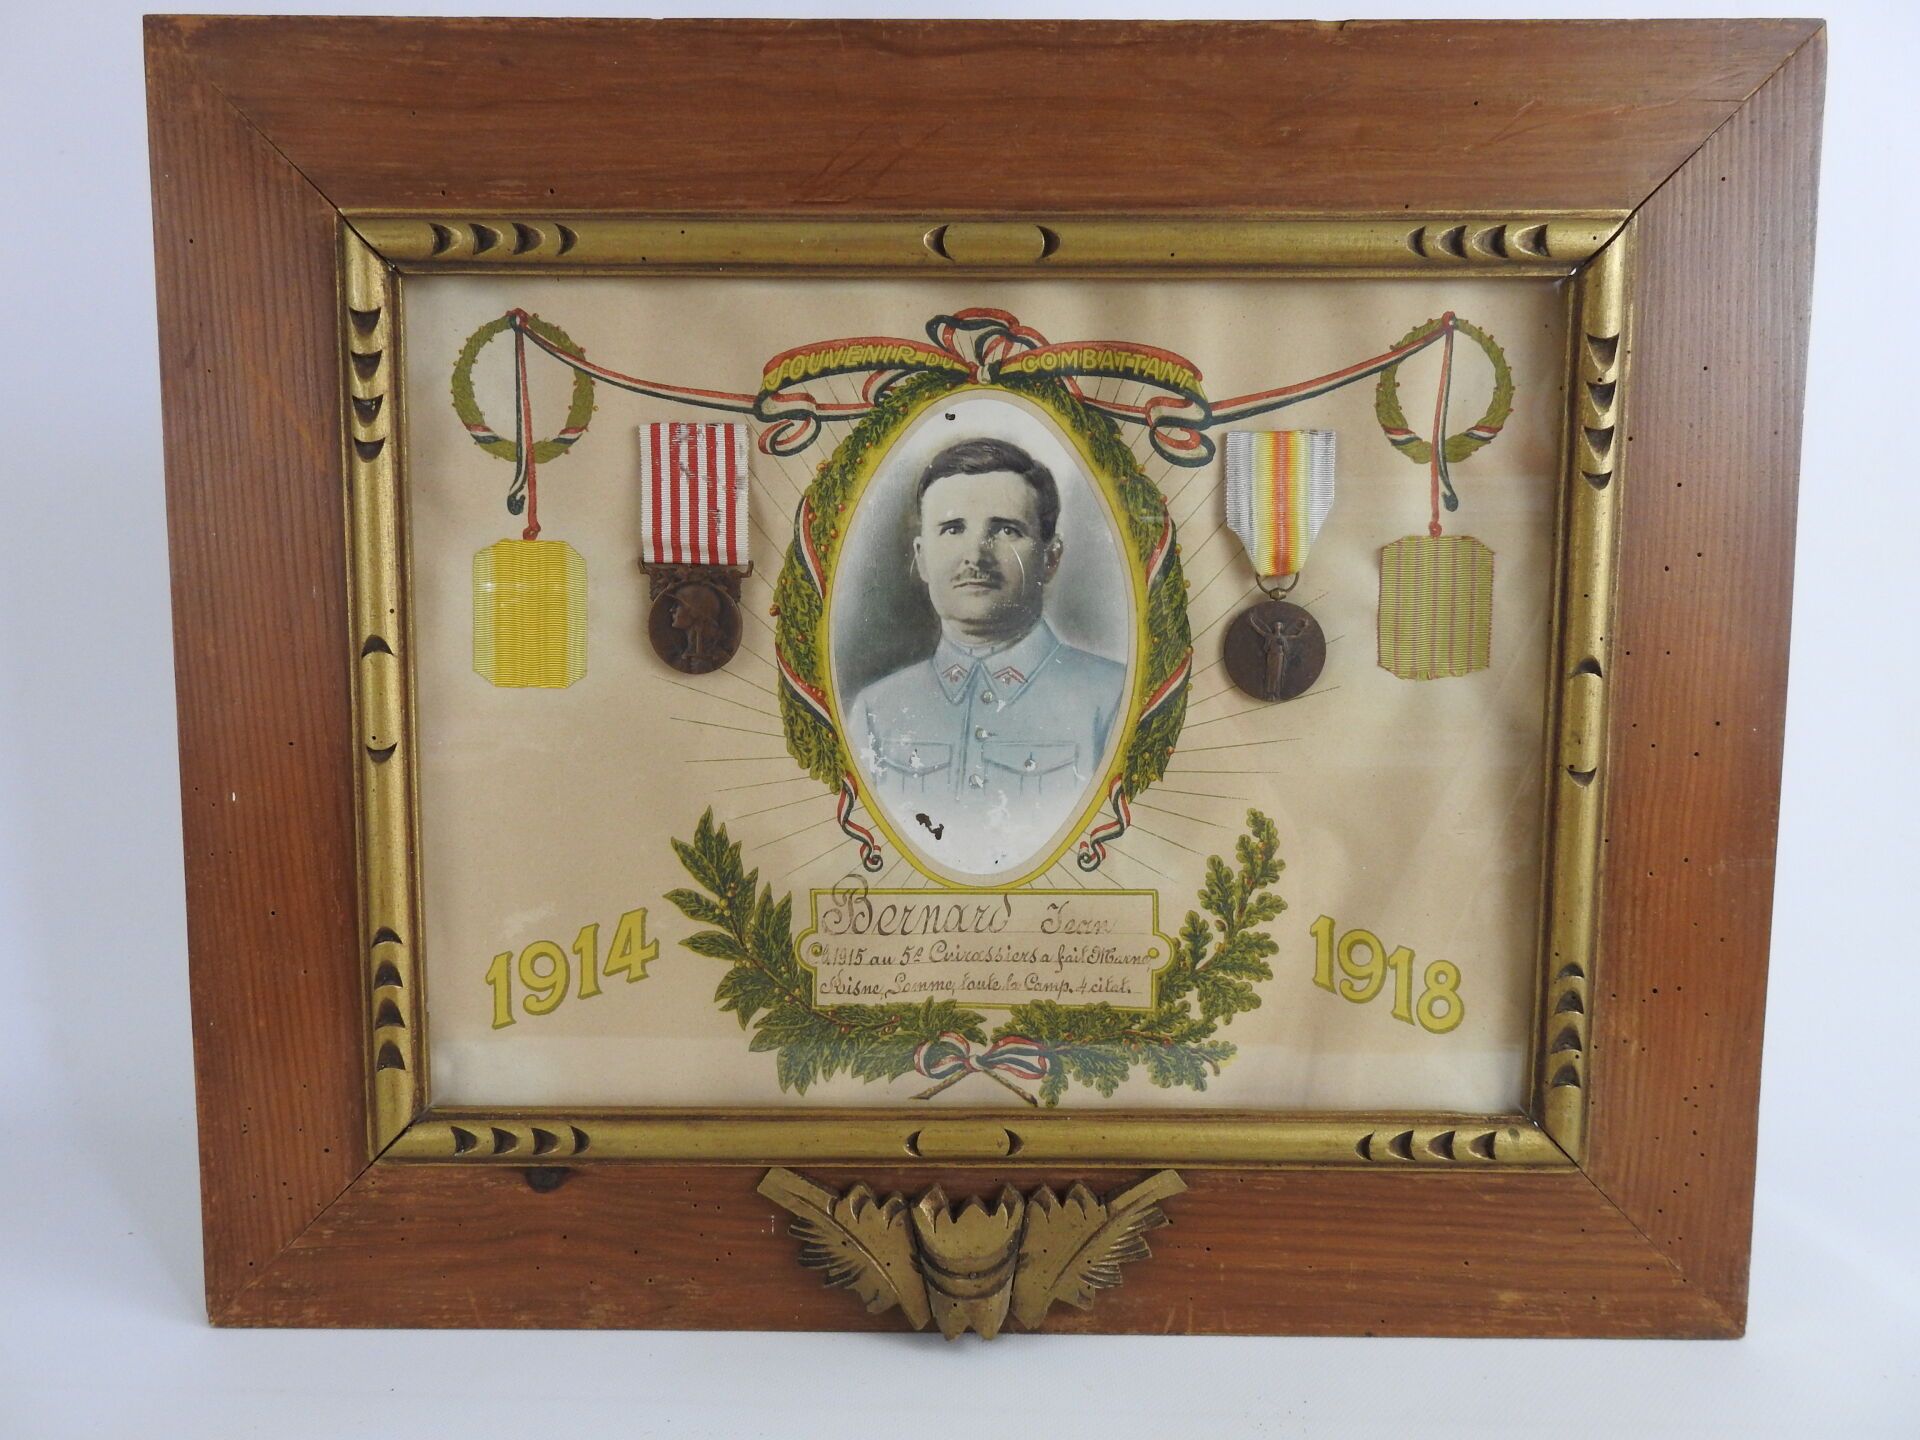 Null 装饰品。法国。镜框内有第五团骑兵让-贝尔纳的照片、联名奖章和14-18纪念品，28 X 38厘米。ABE